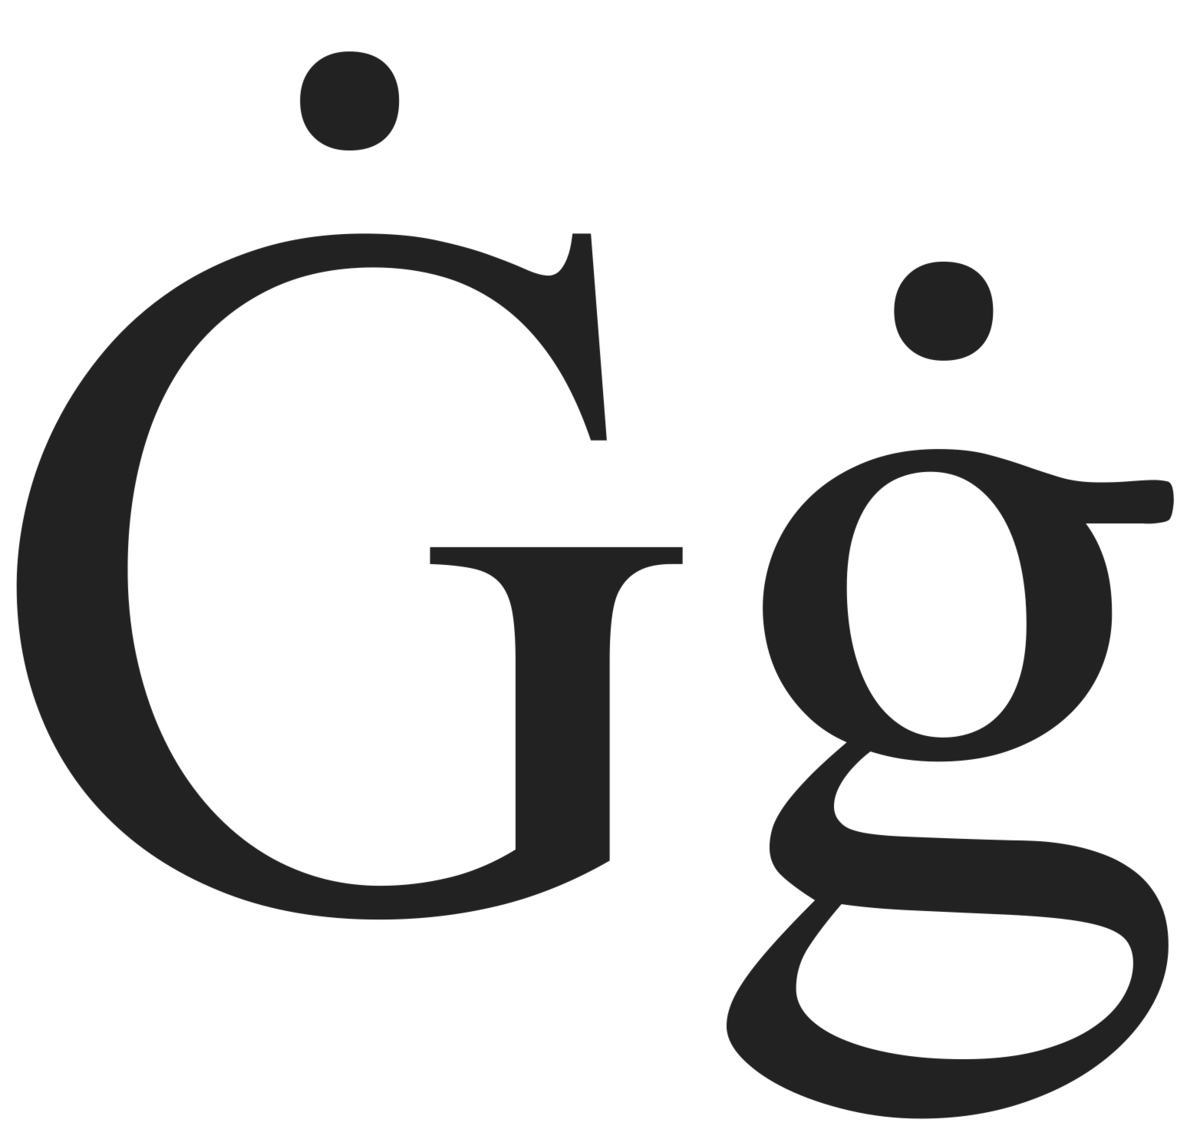 capital letter g